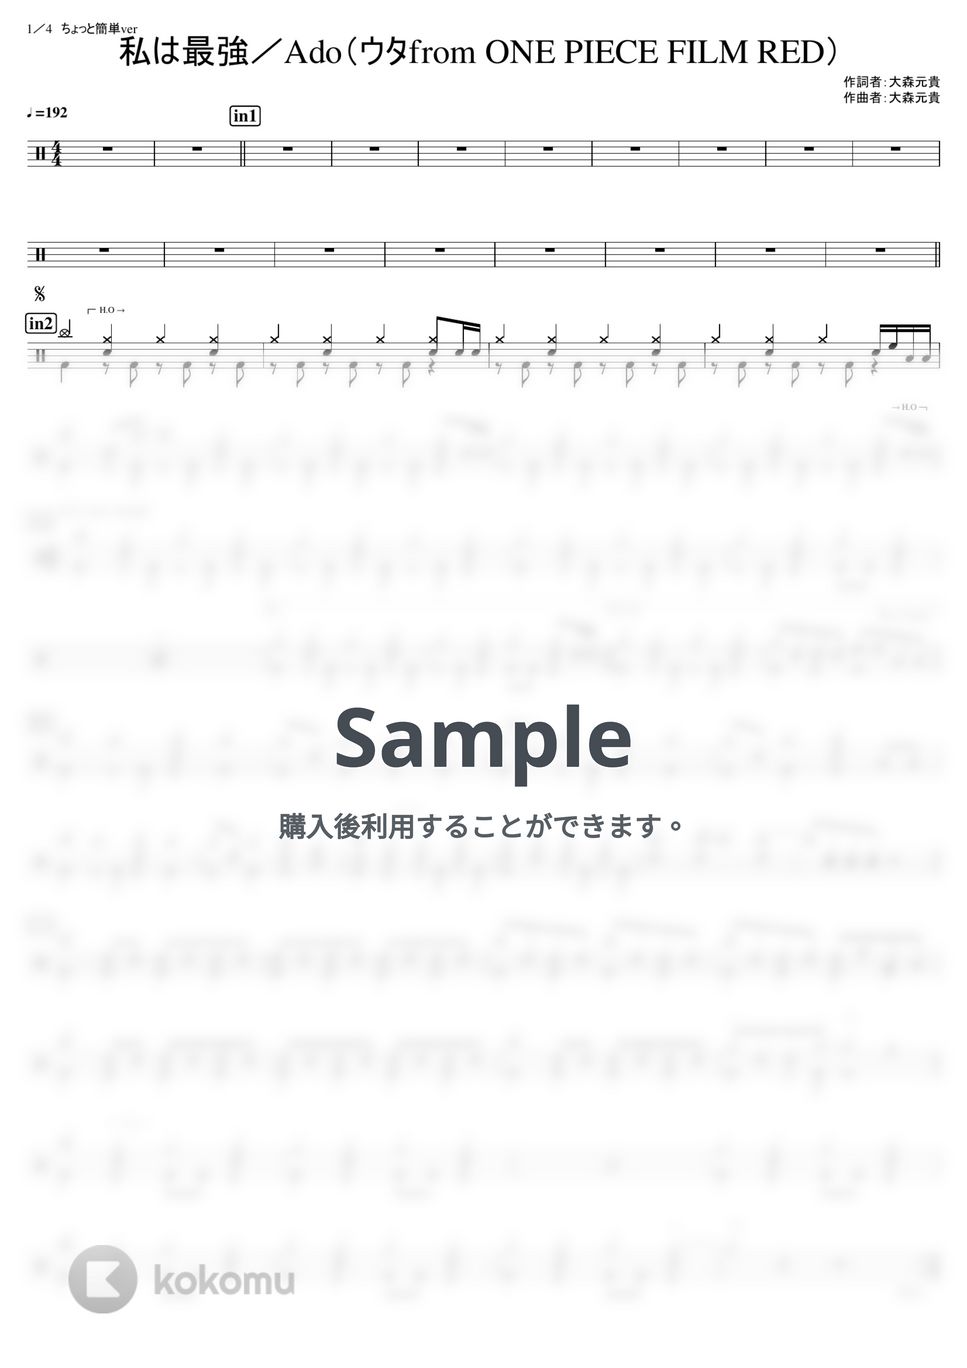 Ado (ウタfrom ONE PIECE) - 私は最強 (中級) by kamishinjo-drum-school